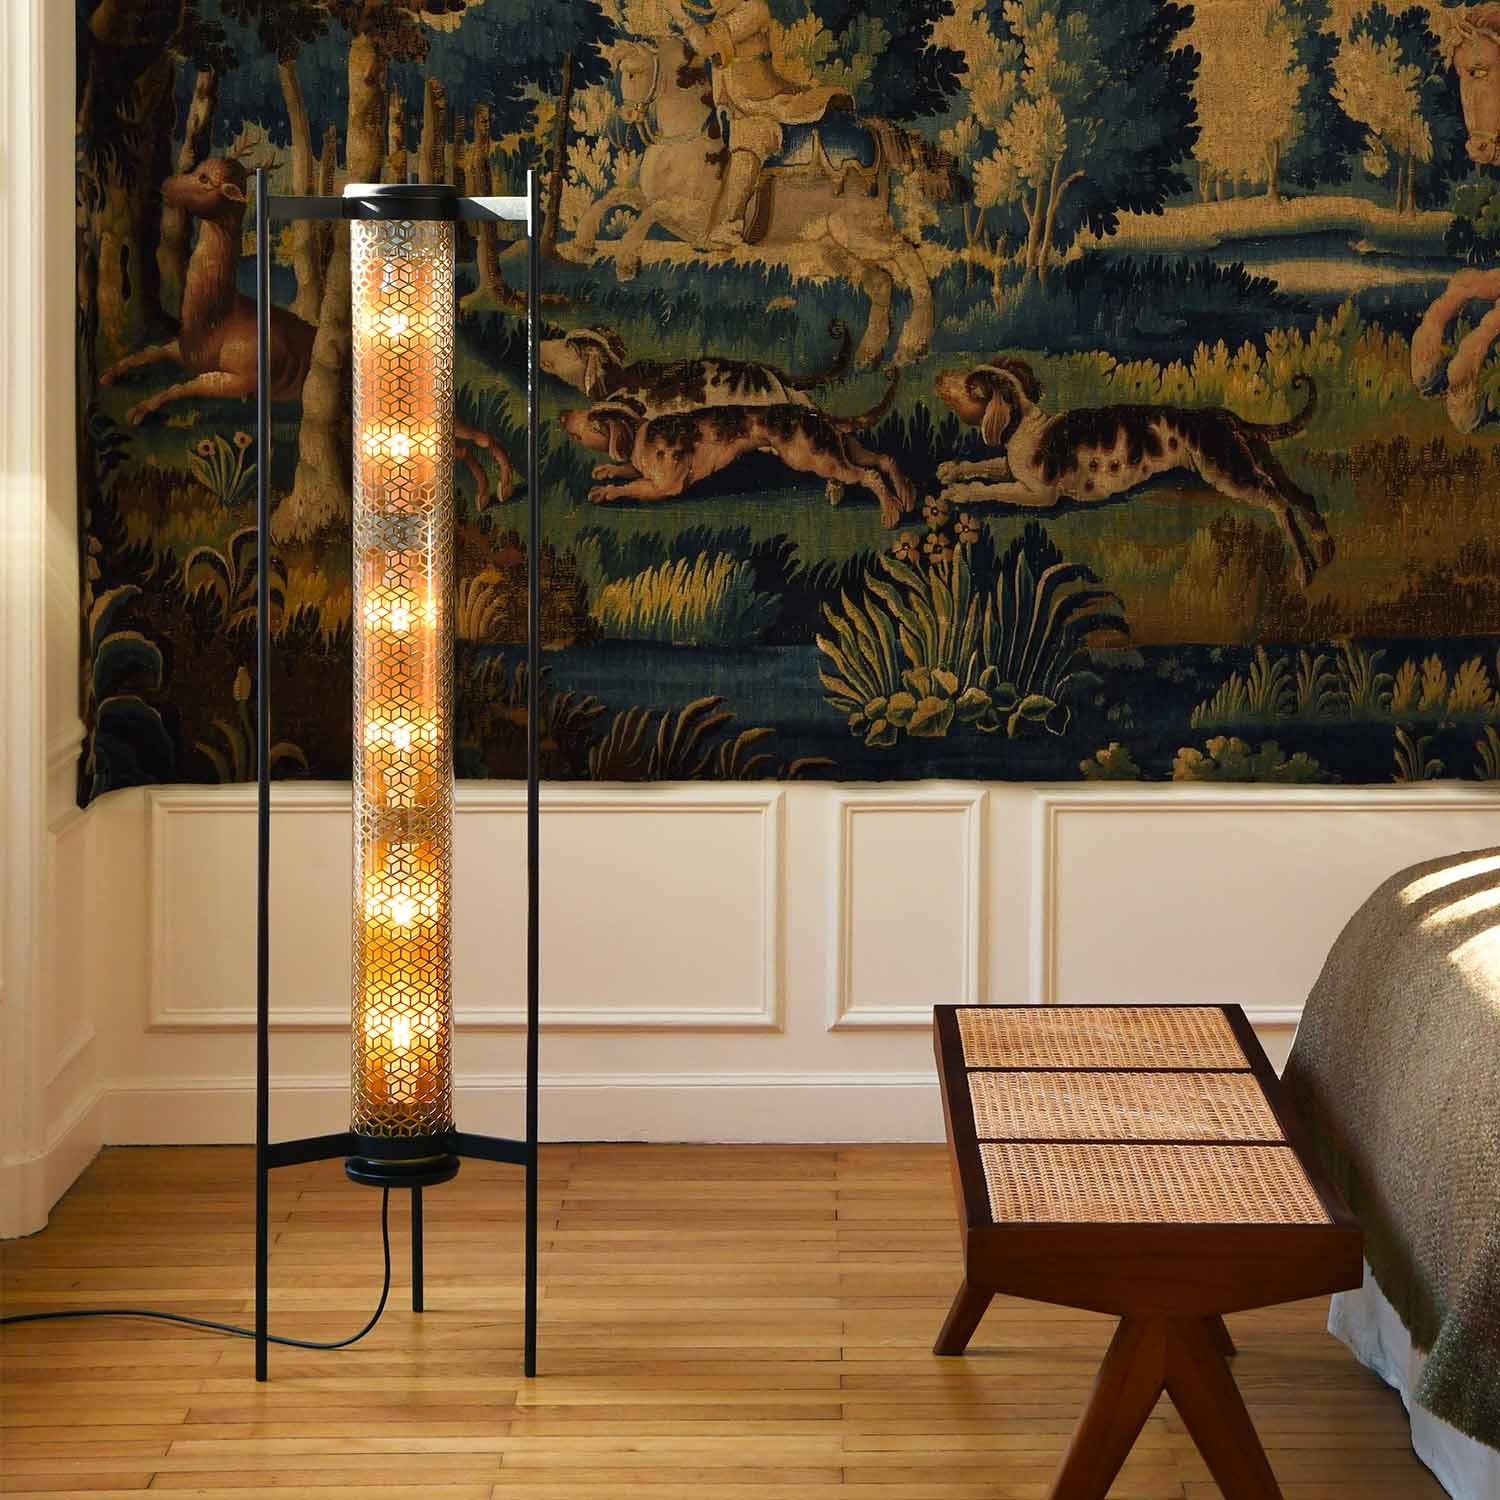 VENDOME - Art deco glass tube floor lamp for living room